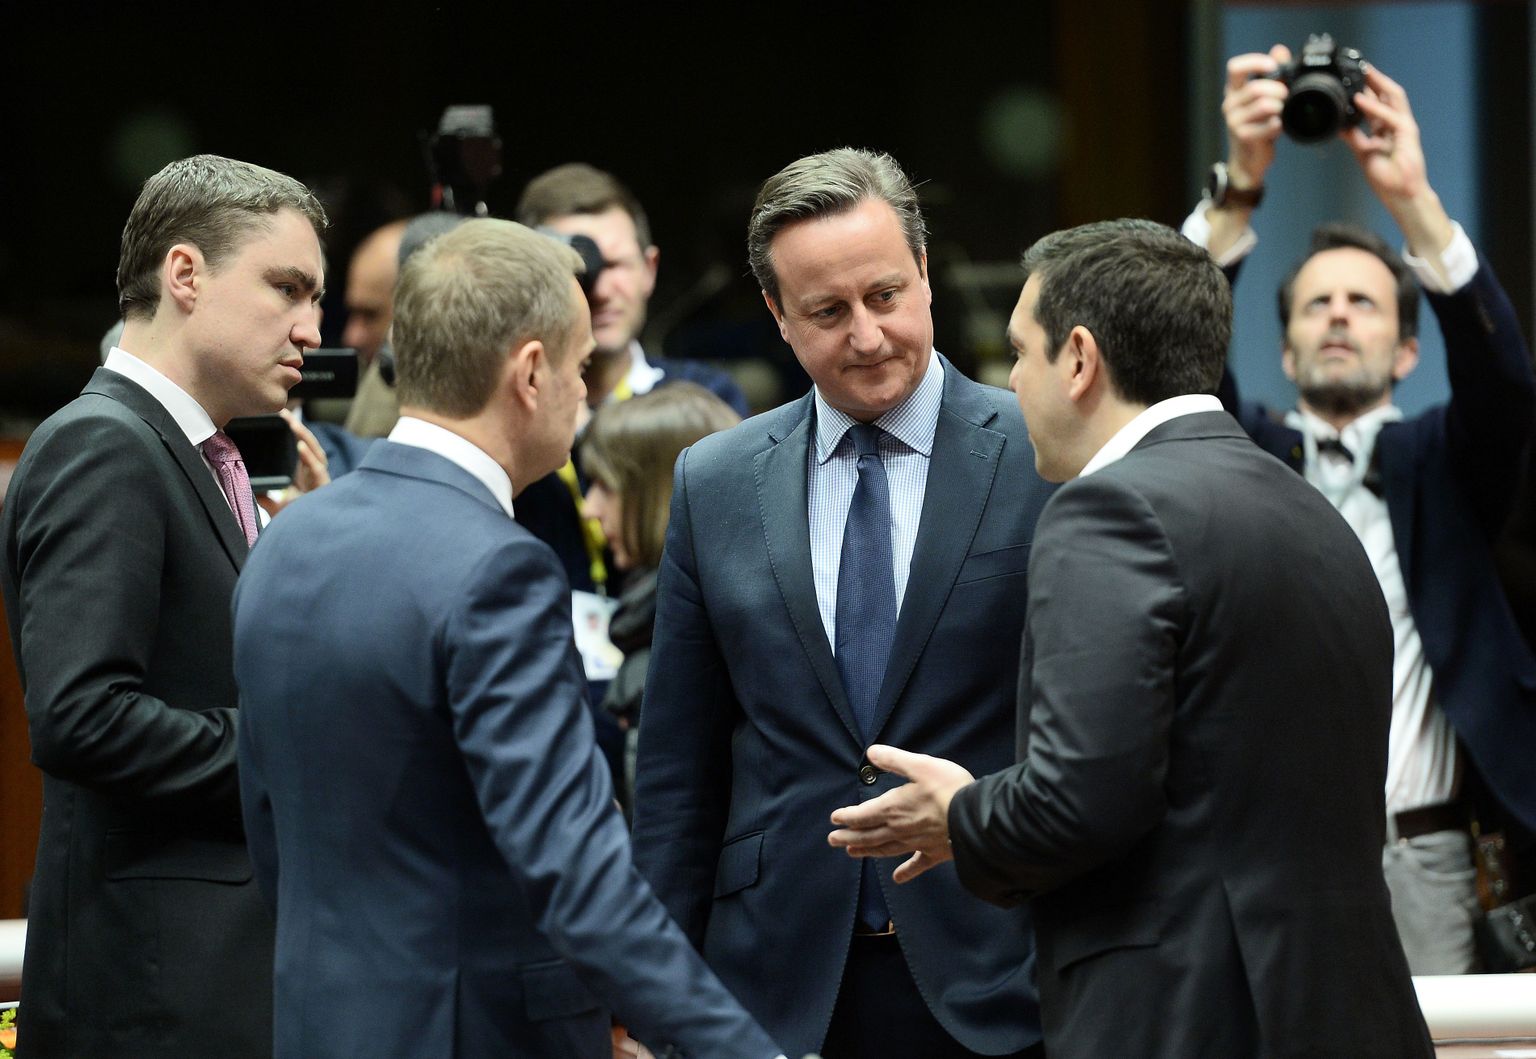 Briti peaminister David Cameron (keskel), Eesti peaminister Taavi Rõivas (vasakul), Ülemkogu president Donald Tusk (vasakult teine) ja Kreeka valitsusjuht Alexis Tsipras täna Ülemkogul vestlemas.